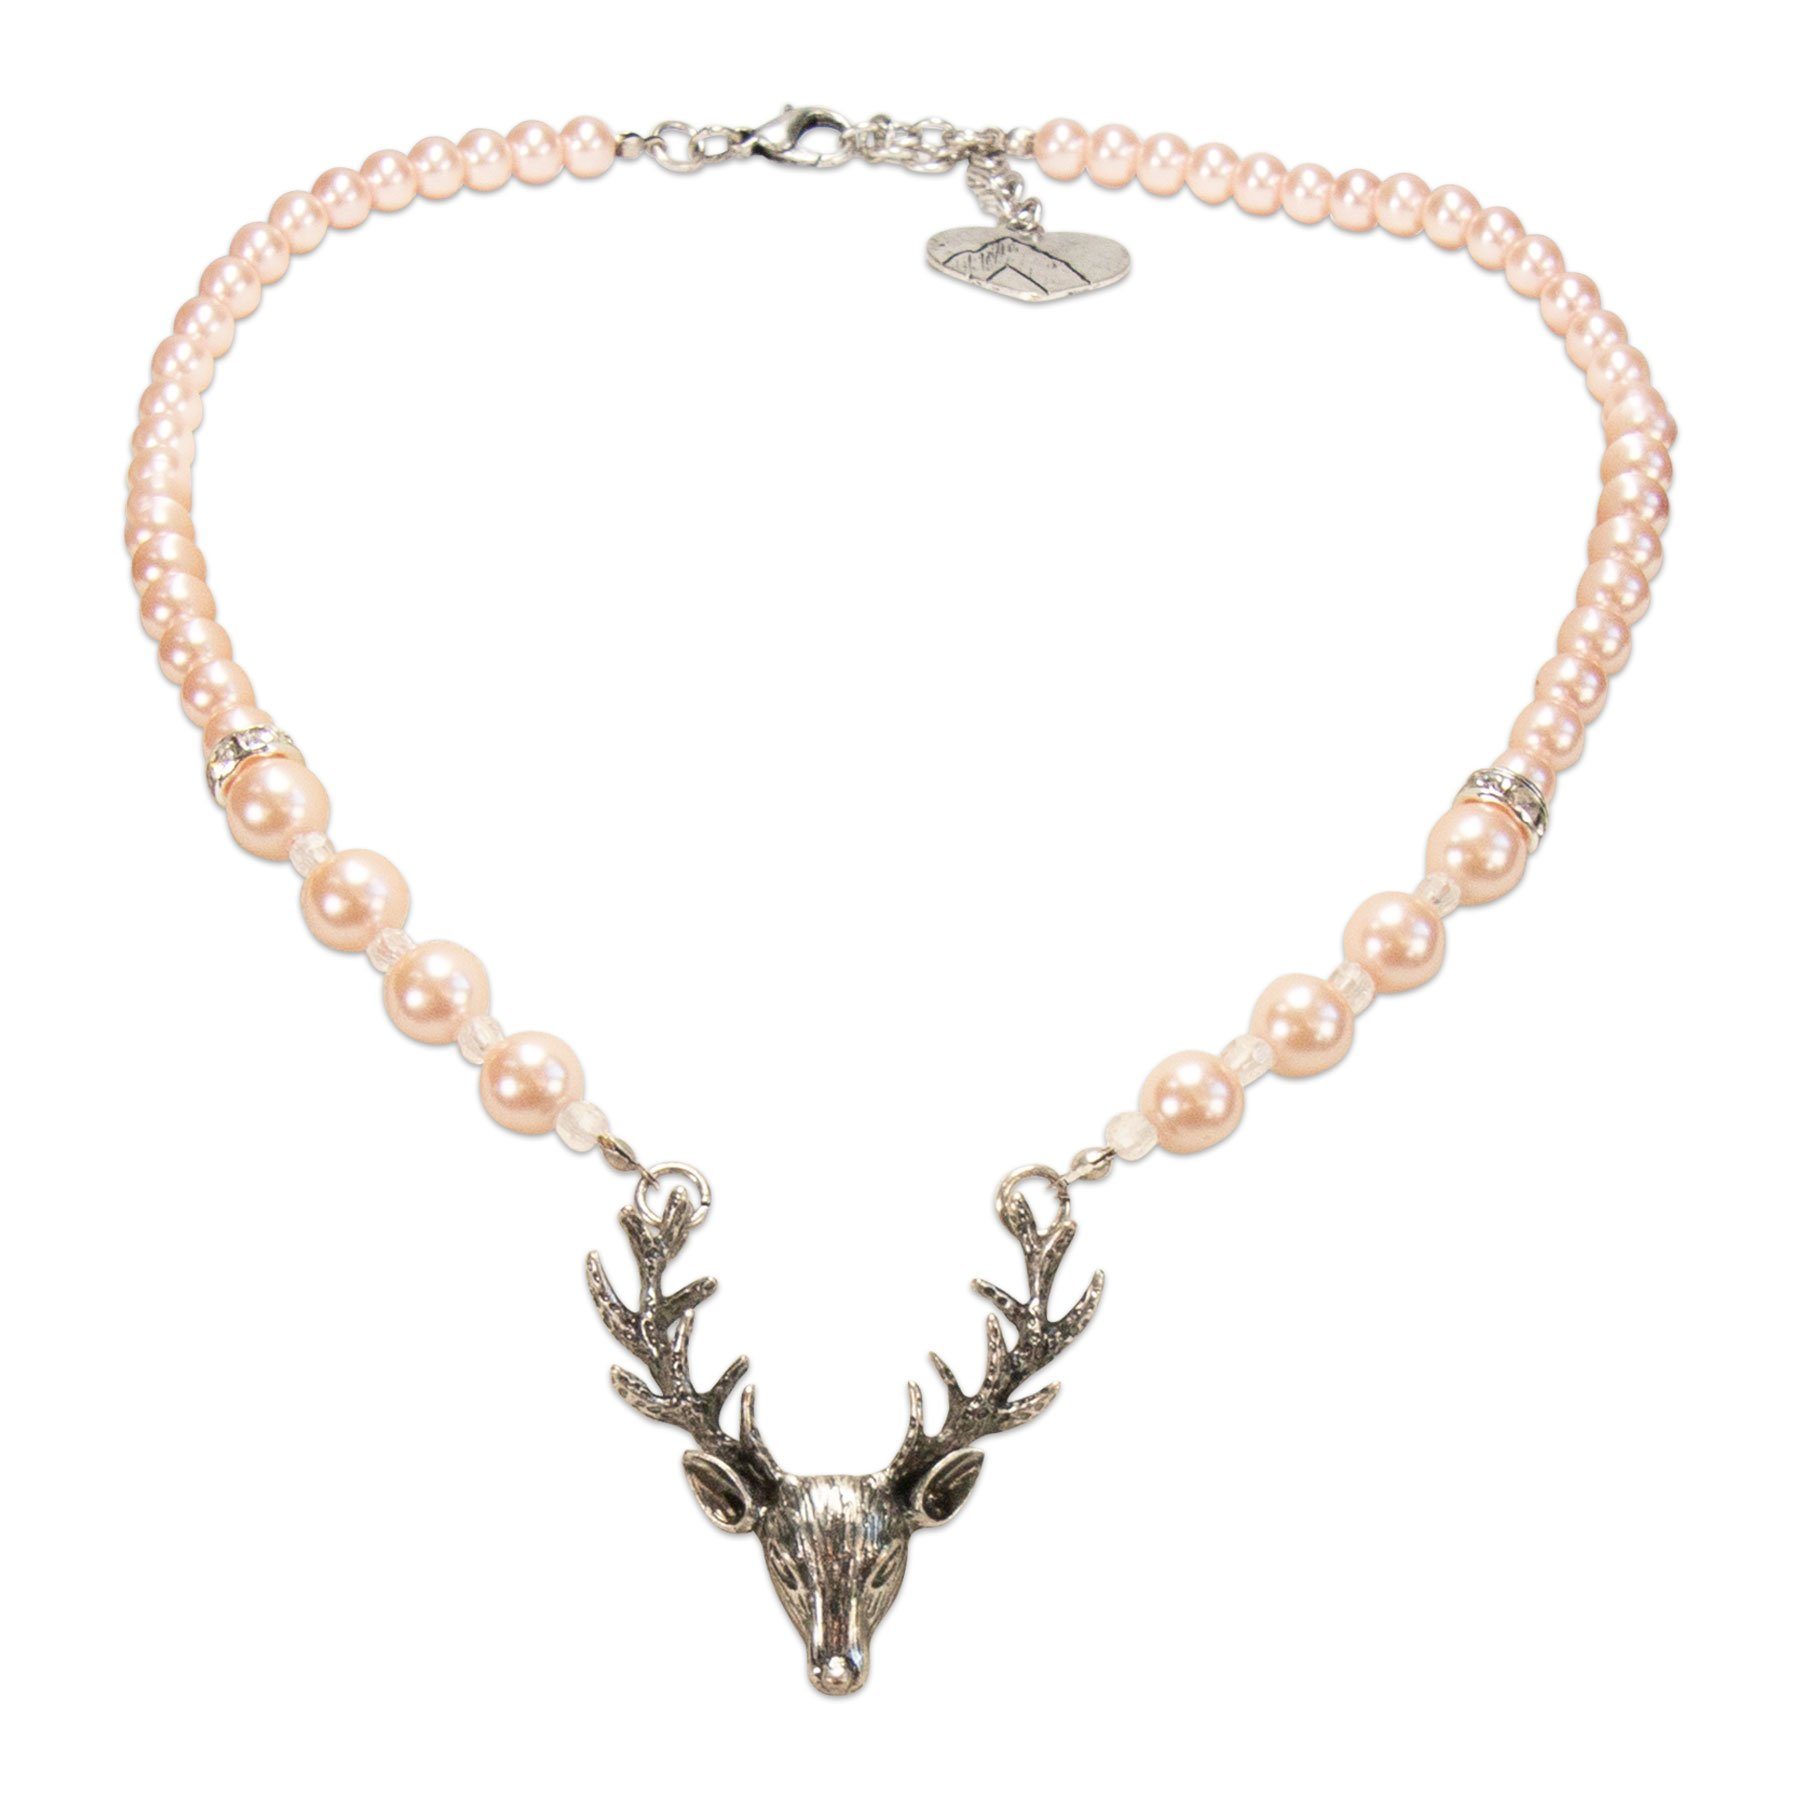 Alpenflüstern Collier Perlen-Trachtenkette Hirsch (rosa-ros), -  Damen-Trachtenschmuck mit Hirsch-Geweih, elegante Dirndlkette